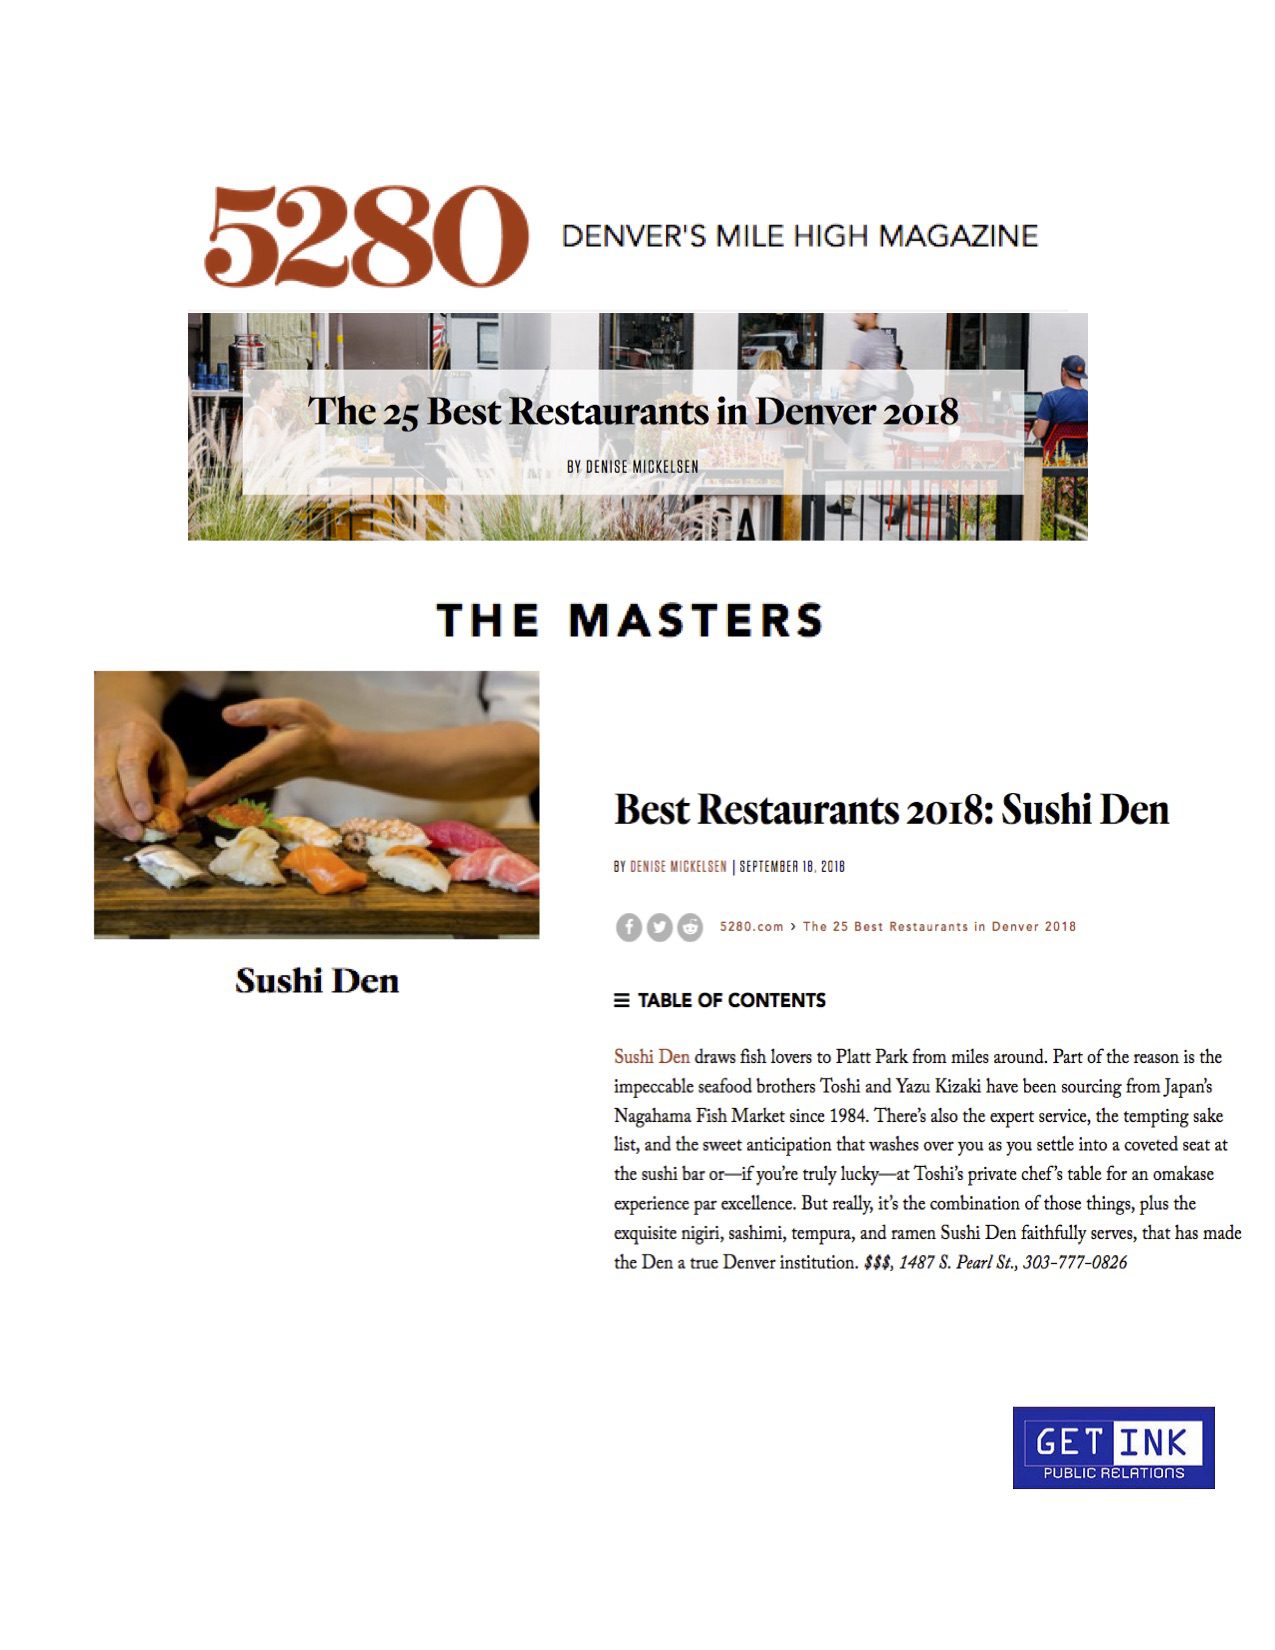 Best restaurant Denver Sushi Den in 5280 Magazine - Get Ink Pr clients